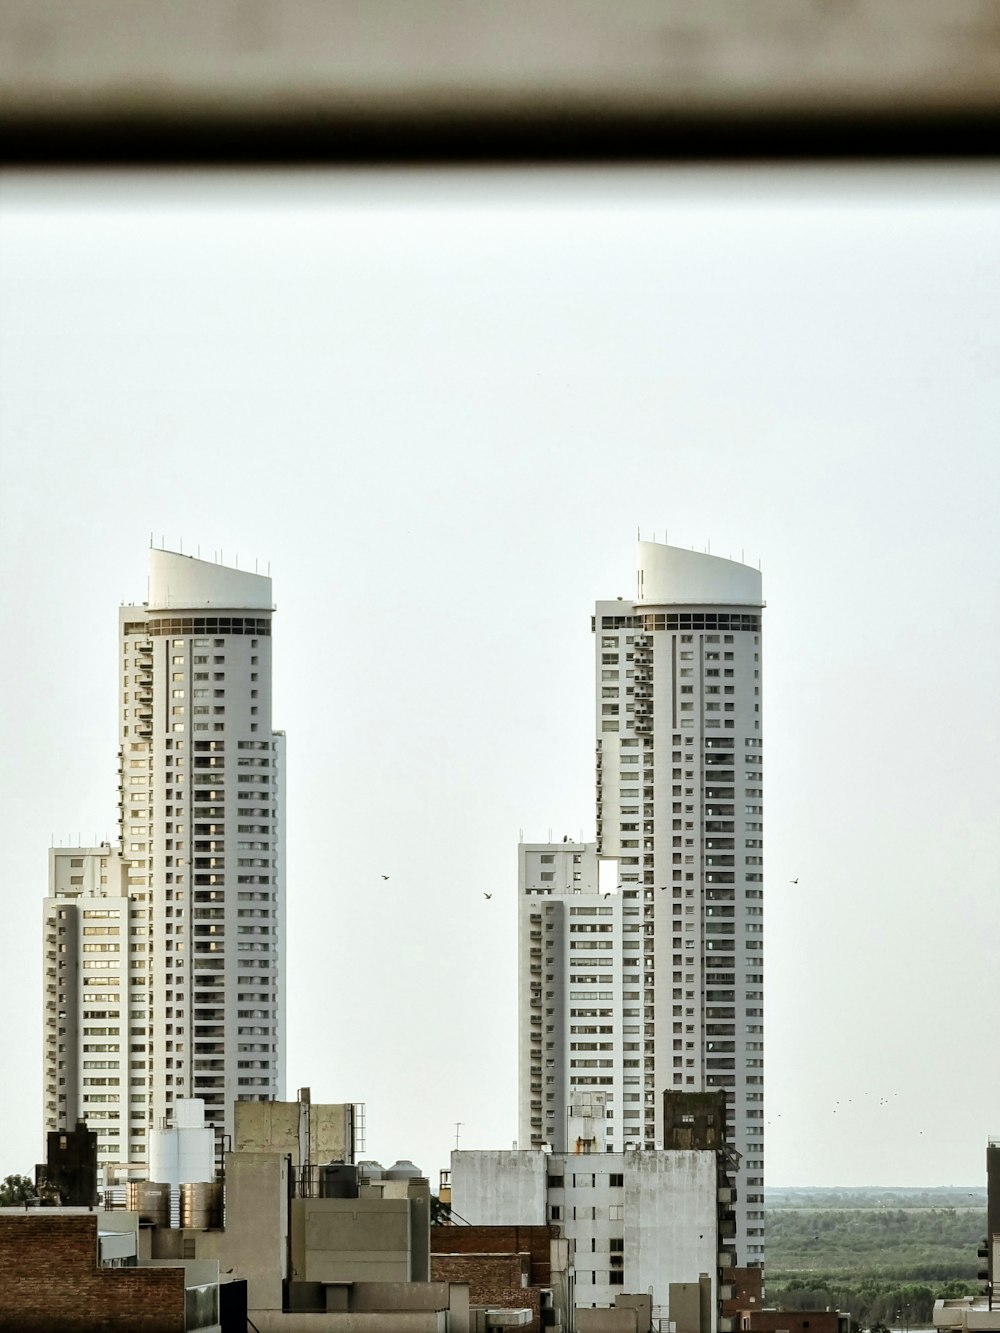 Una vista de algunos edificios muy altos desde una ventana